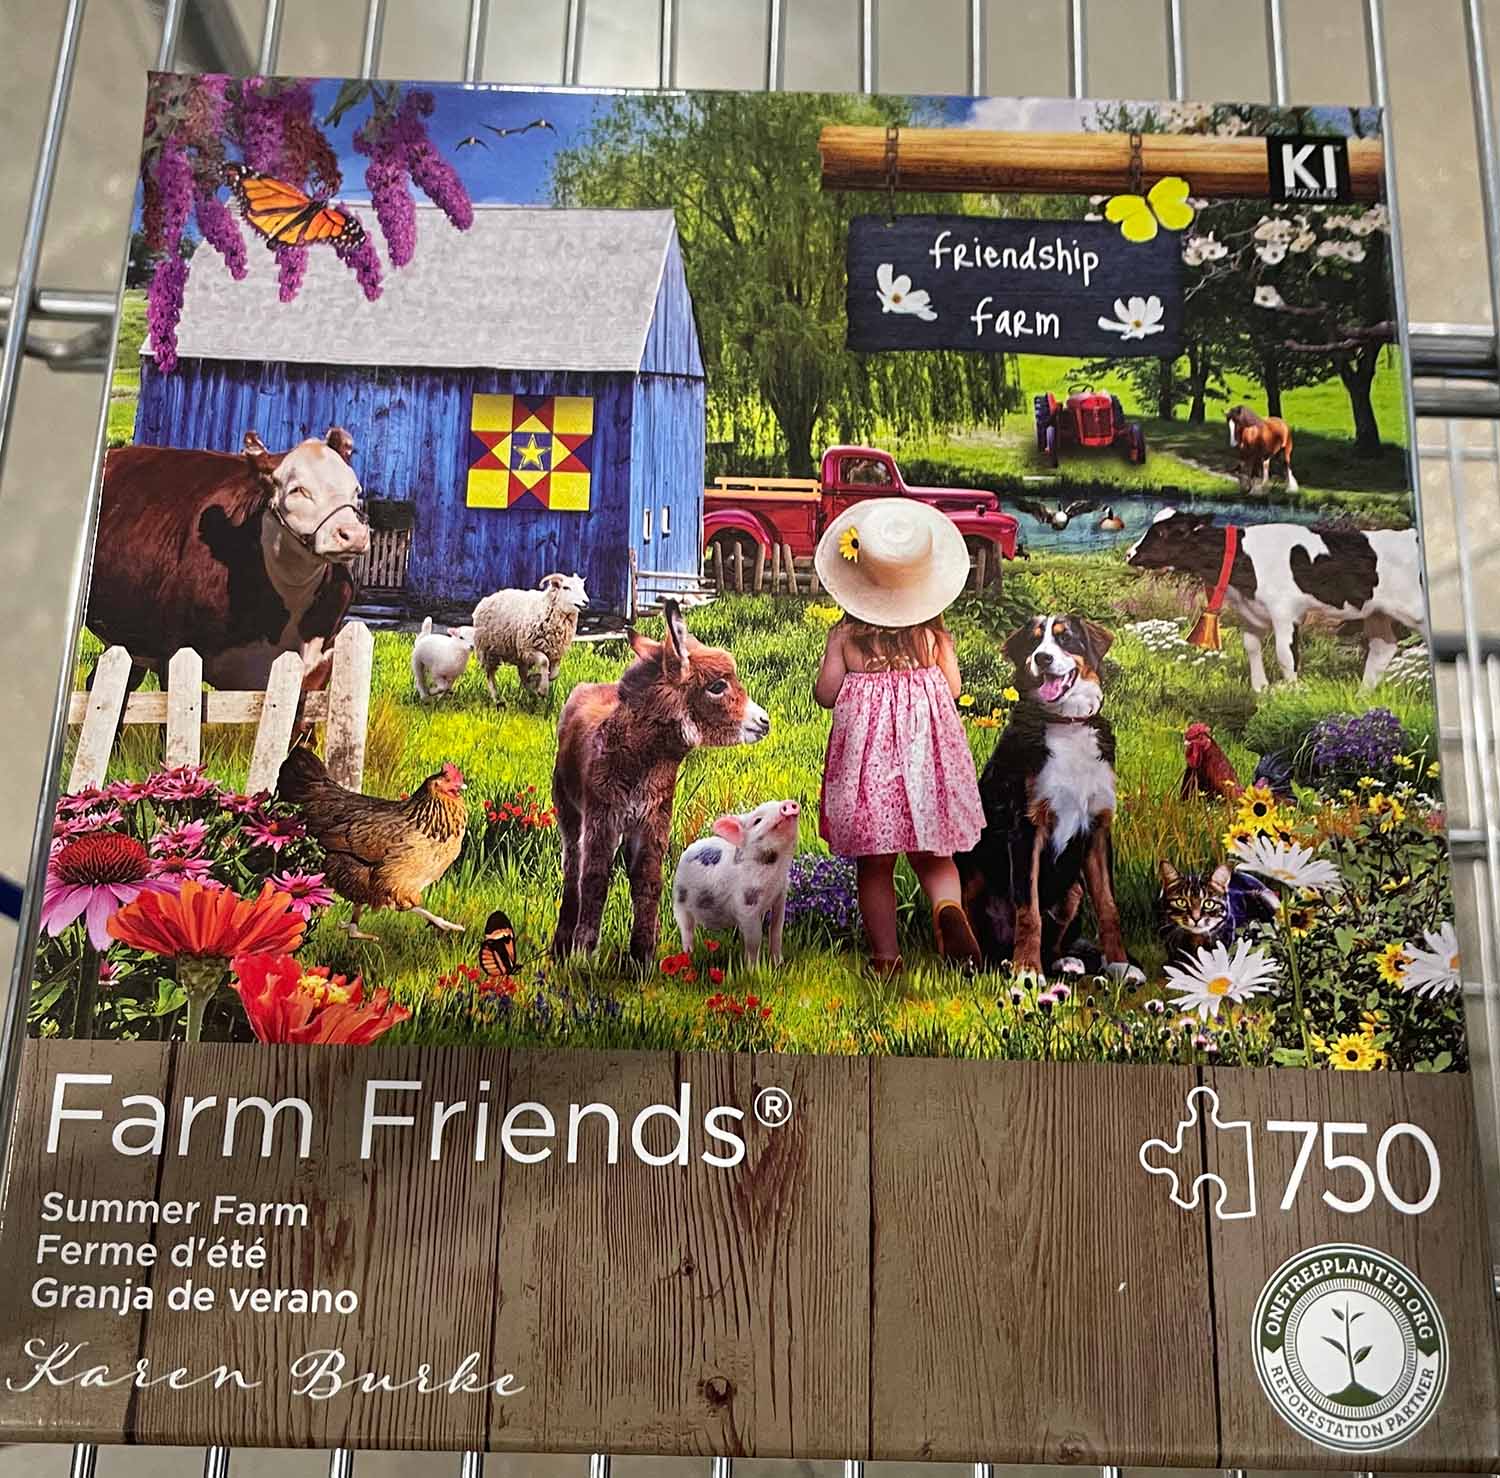 Honore and Friends Progressive Farm Puzzle - 3070900071124